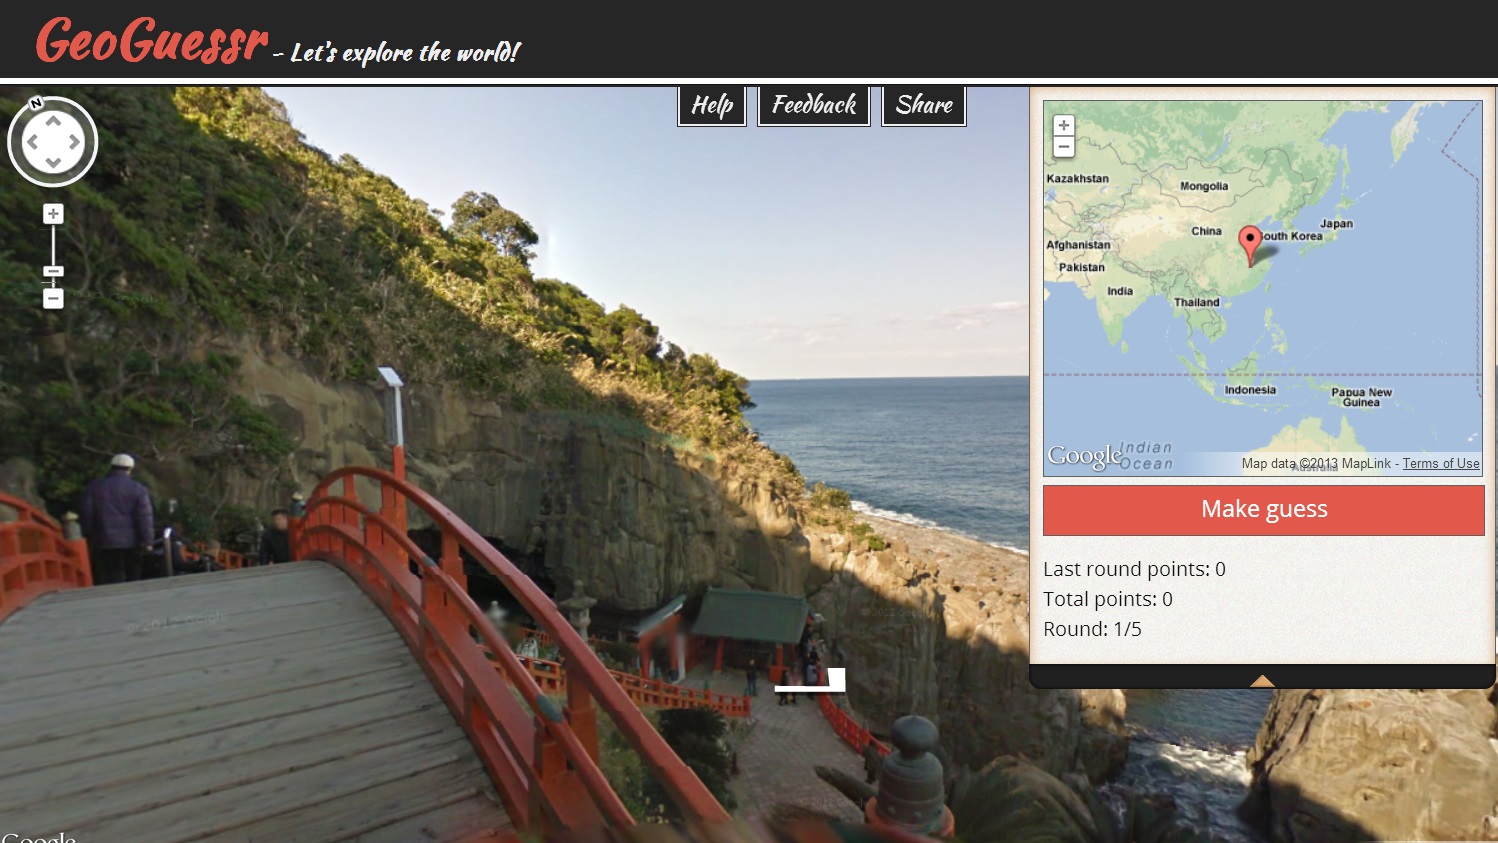 G1 - Google acaba com jogo de tiro que usava mapas do Street View -  notícias em Tecnologia e Games